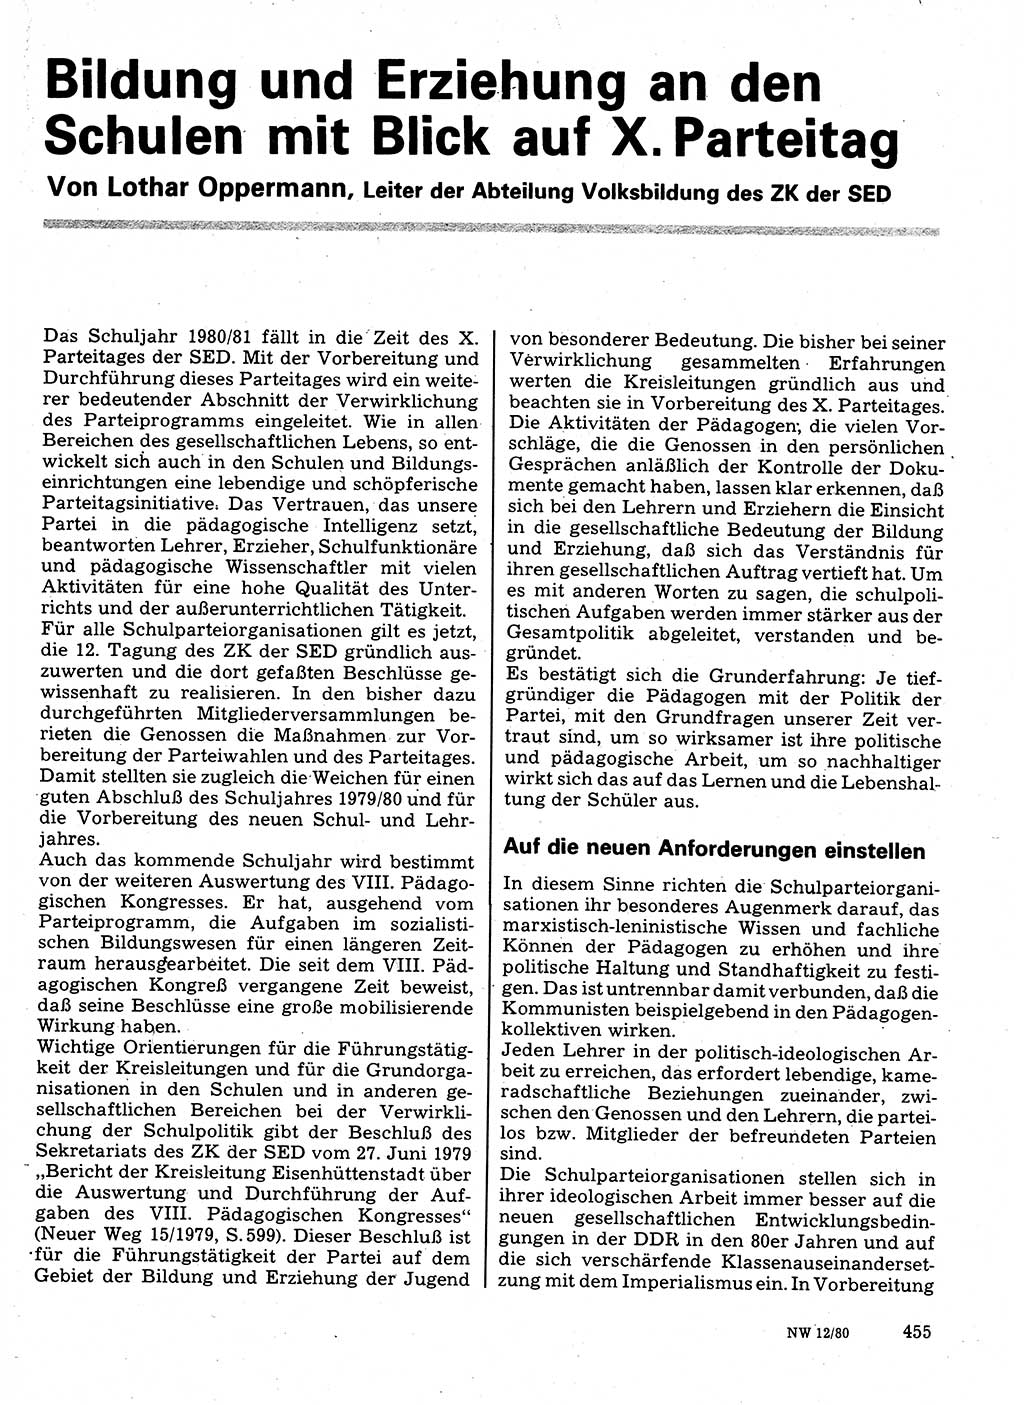 Neuer Weg (NW), Organ des Zentralkomitees (ZK) der SED (Sozialistische Einheitspartei Deutschlands) für Fragen des Parteilebens, 35. Jahrgang [Deutsche Demokratische Republik (DDR)] 1980, Seite 455 (NW ZK SED DDR 1980, S. 455)